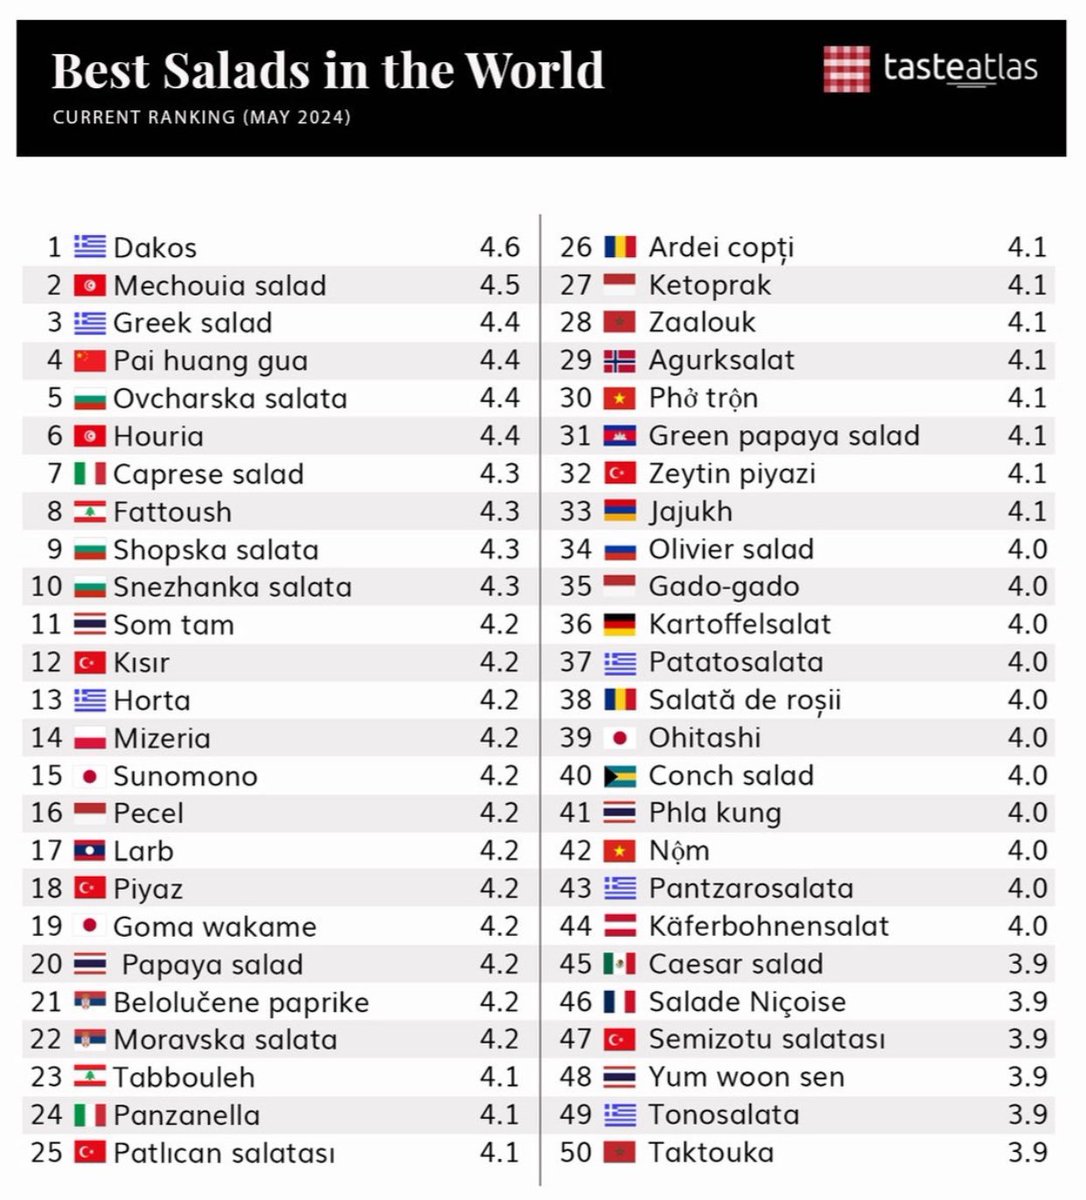 🏆مبروك 🇱🇧الفتوش اللبنانية (المرتبة ٨) و🇱🇧التبولة اللبنانية (المرتبة ٢٣) بتصنيف شهر أيار ٢٠٢٤ كـ'أفضل سَلَطات العالم' بحسب موقع 'تايست أطلس' المتخصص الشهير👏🙌🌺🕺🏻